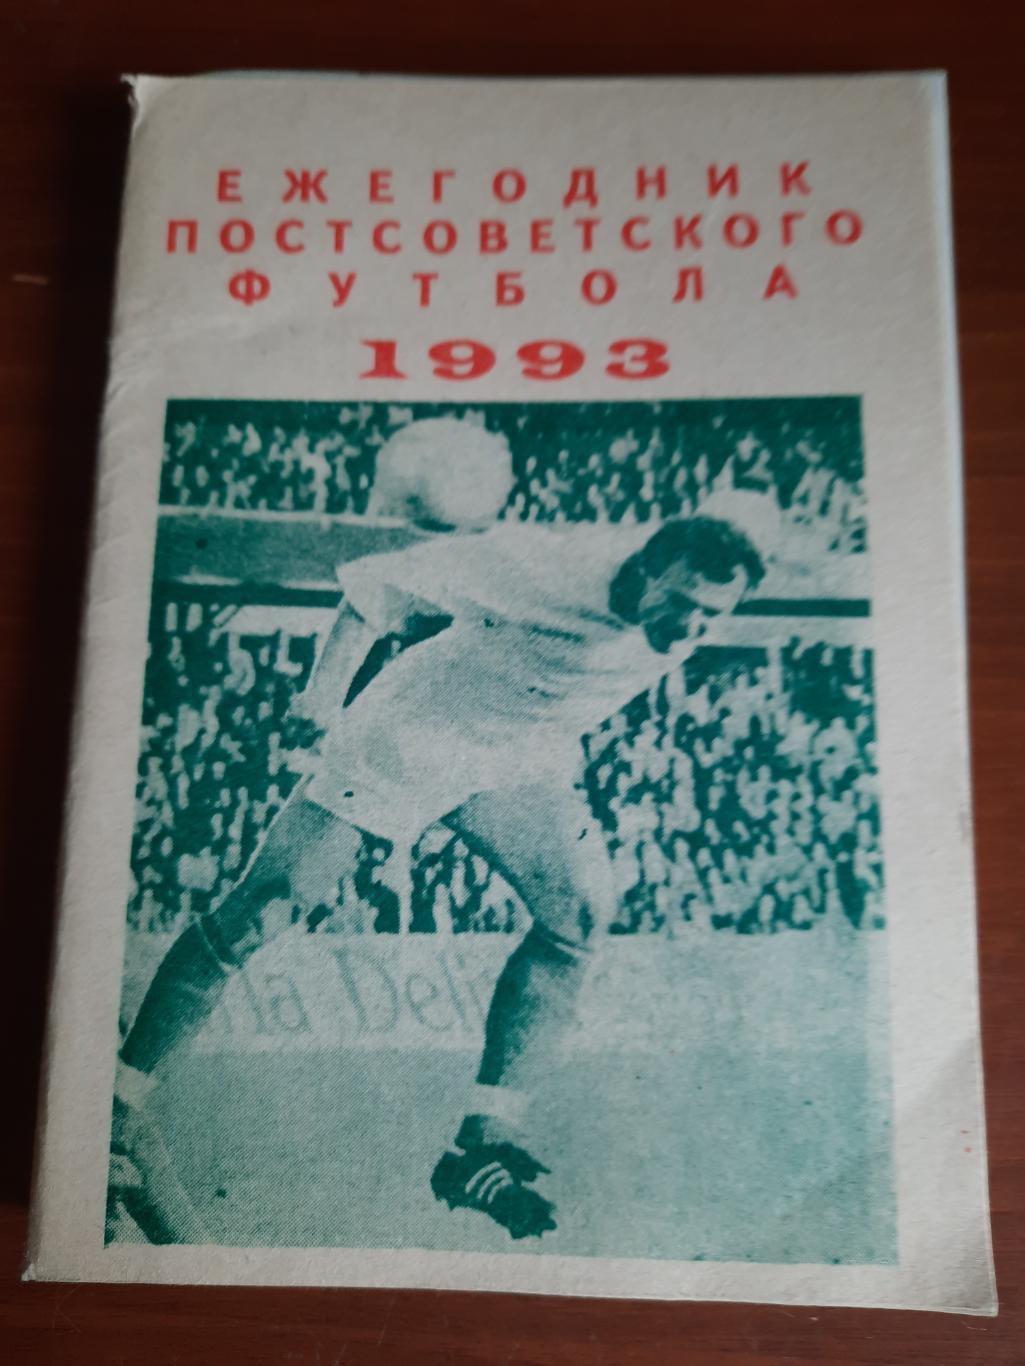 Ежегодник постсоветского футбола 1993